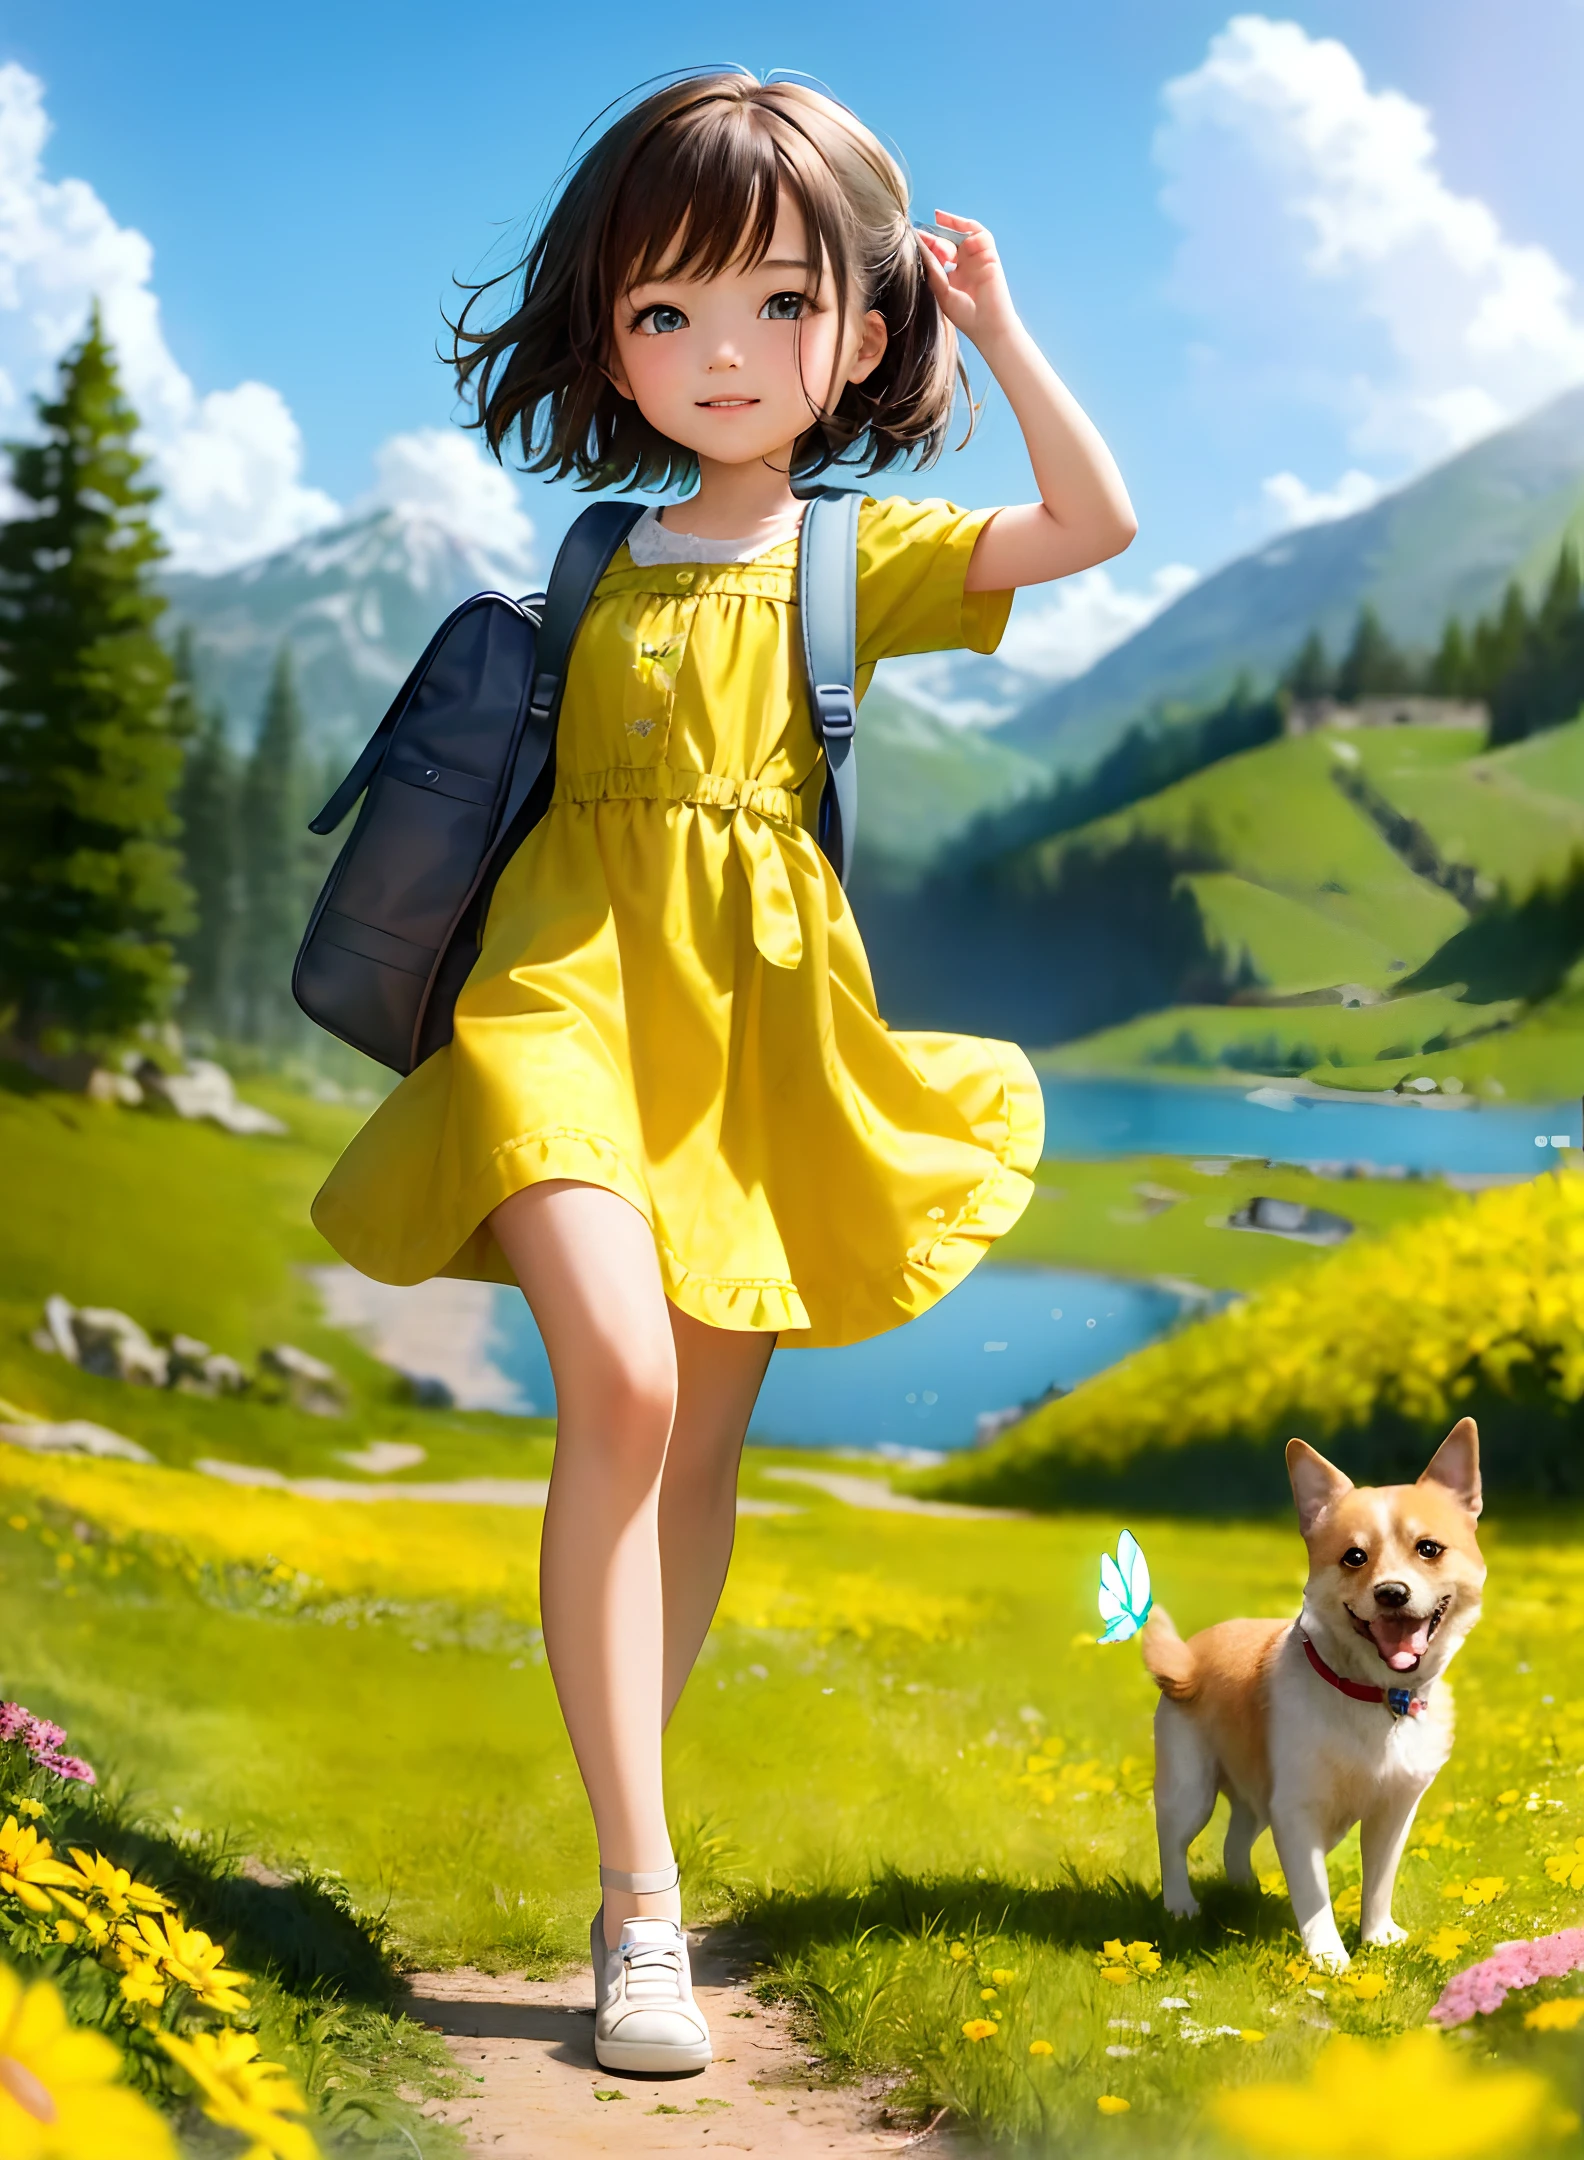 (最好的质量, 杰作, 卡通风格, 高分辨率 4k 壁纸), 一位背着背包的迷人女子和她可爱的狗正在美丽的黄色花朵和风景秀丽的大自然中享受一次可爱的春游. 插图描绘了非常详细的面部特征和一只翩翩起舞的蝴蝶.